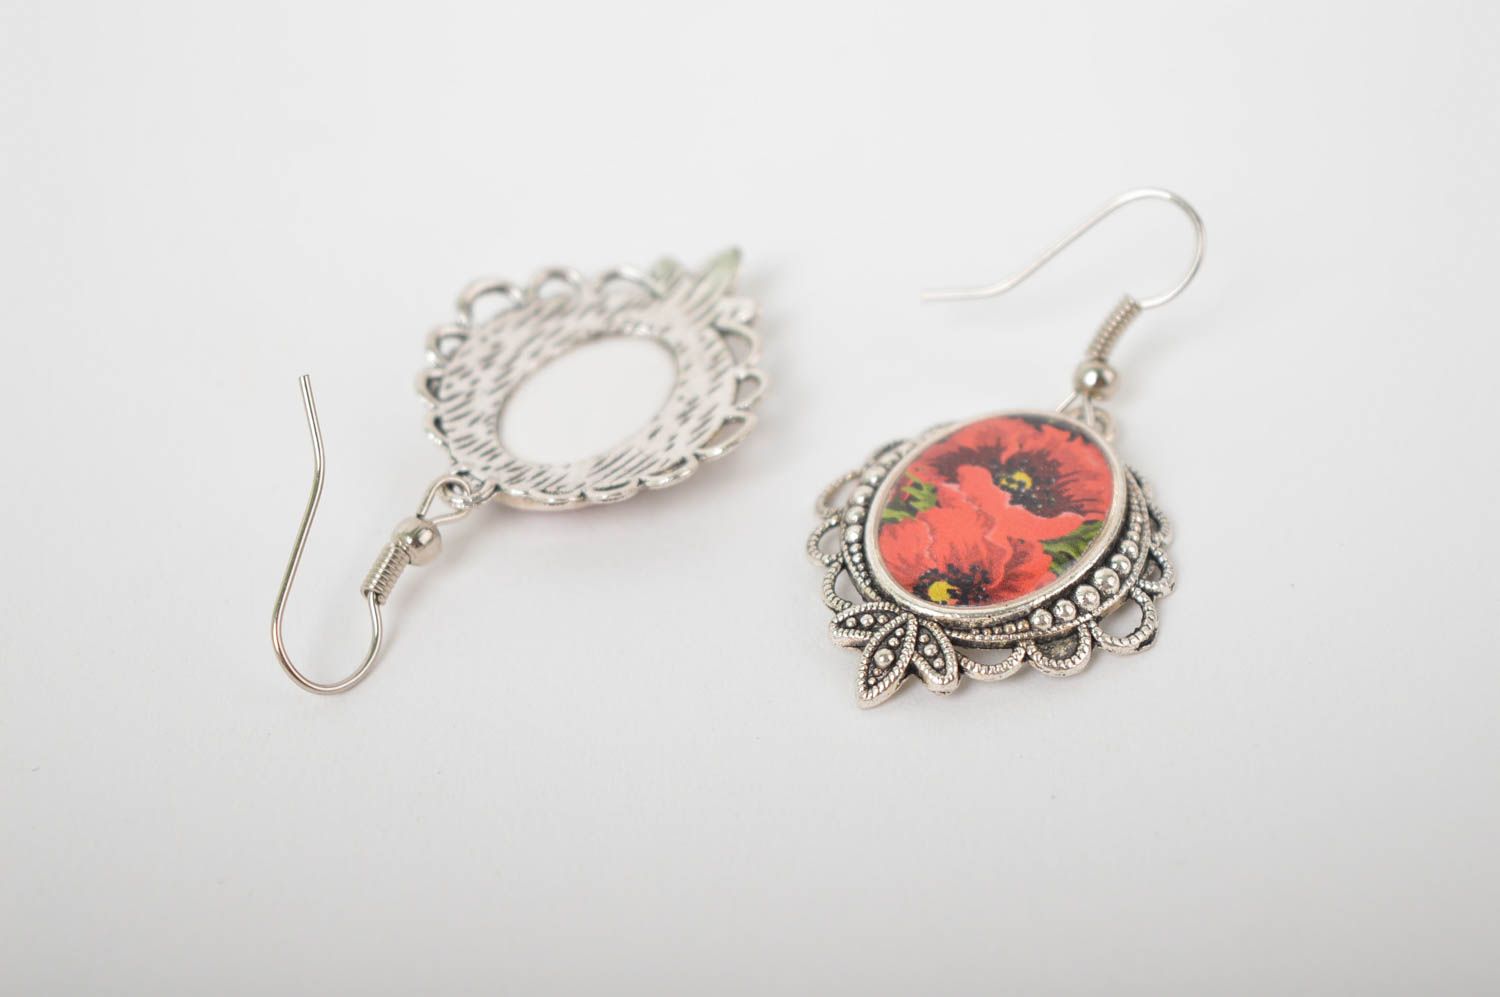 Handmade earrings designer jewelry earrings for women gifts for girls photo 4